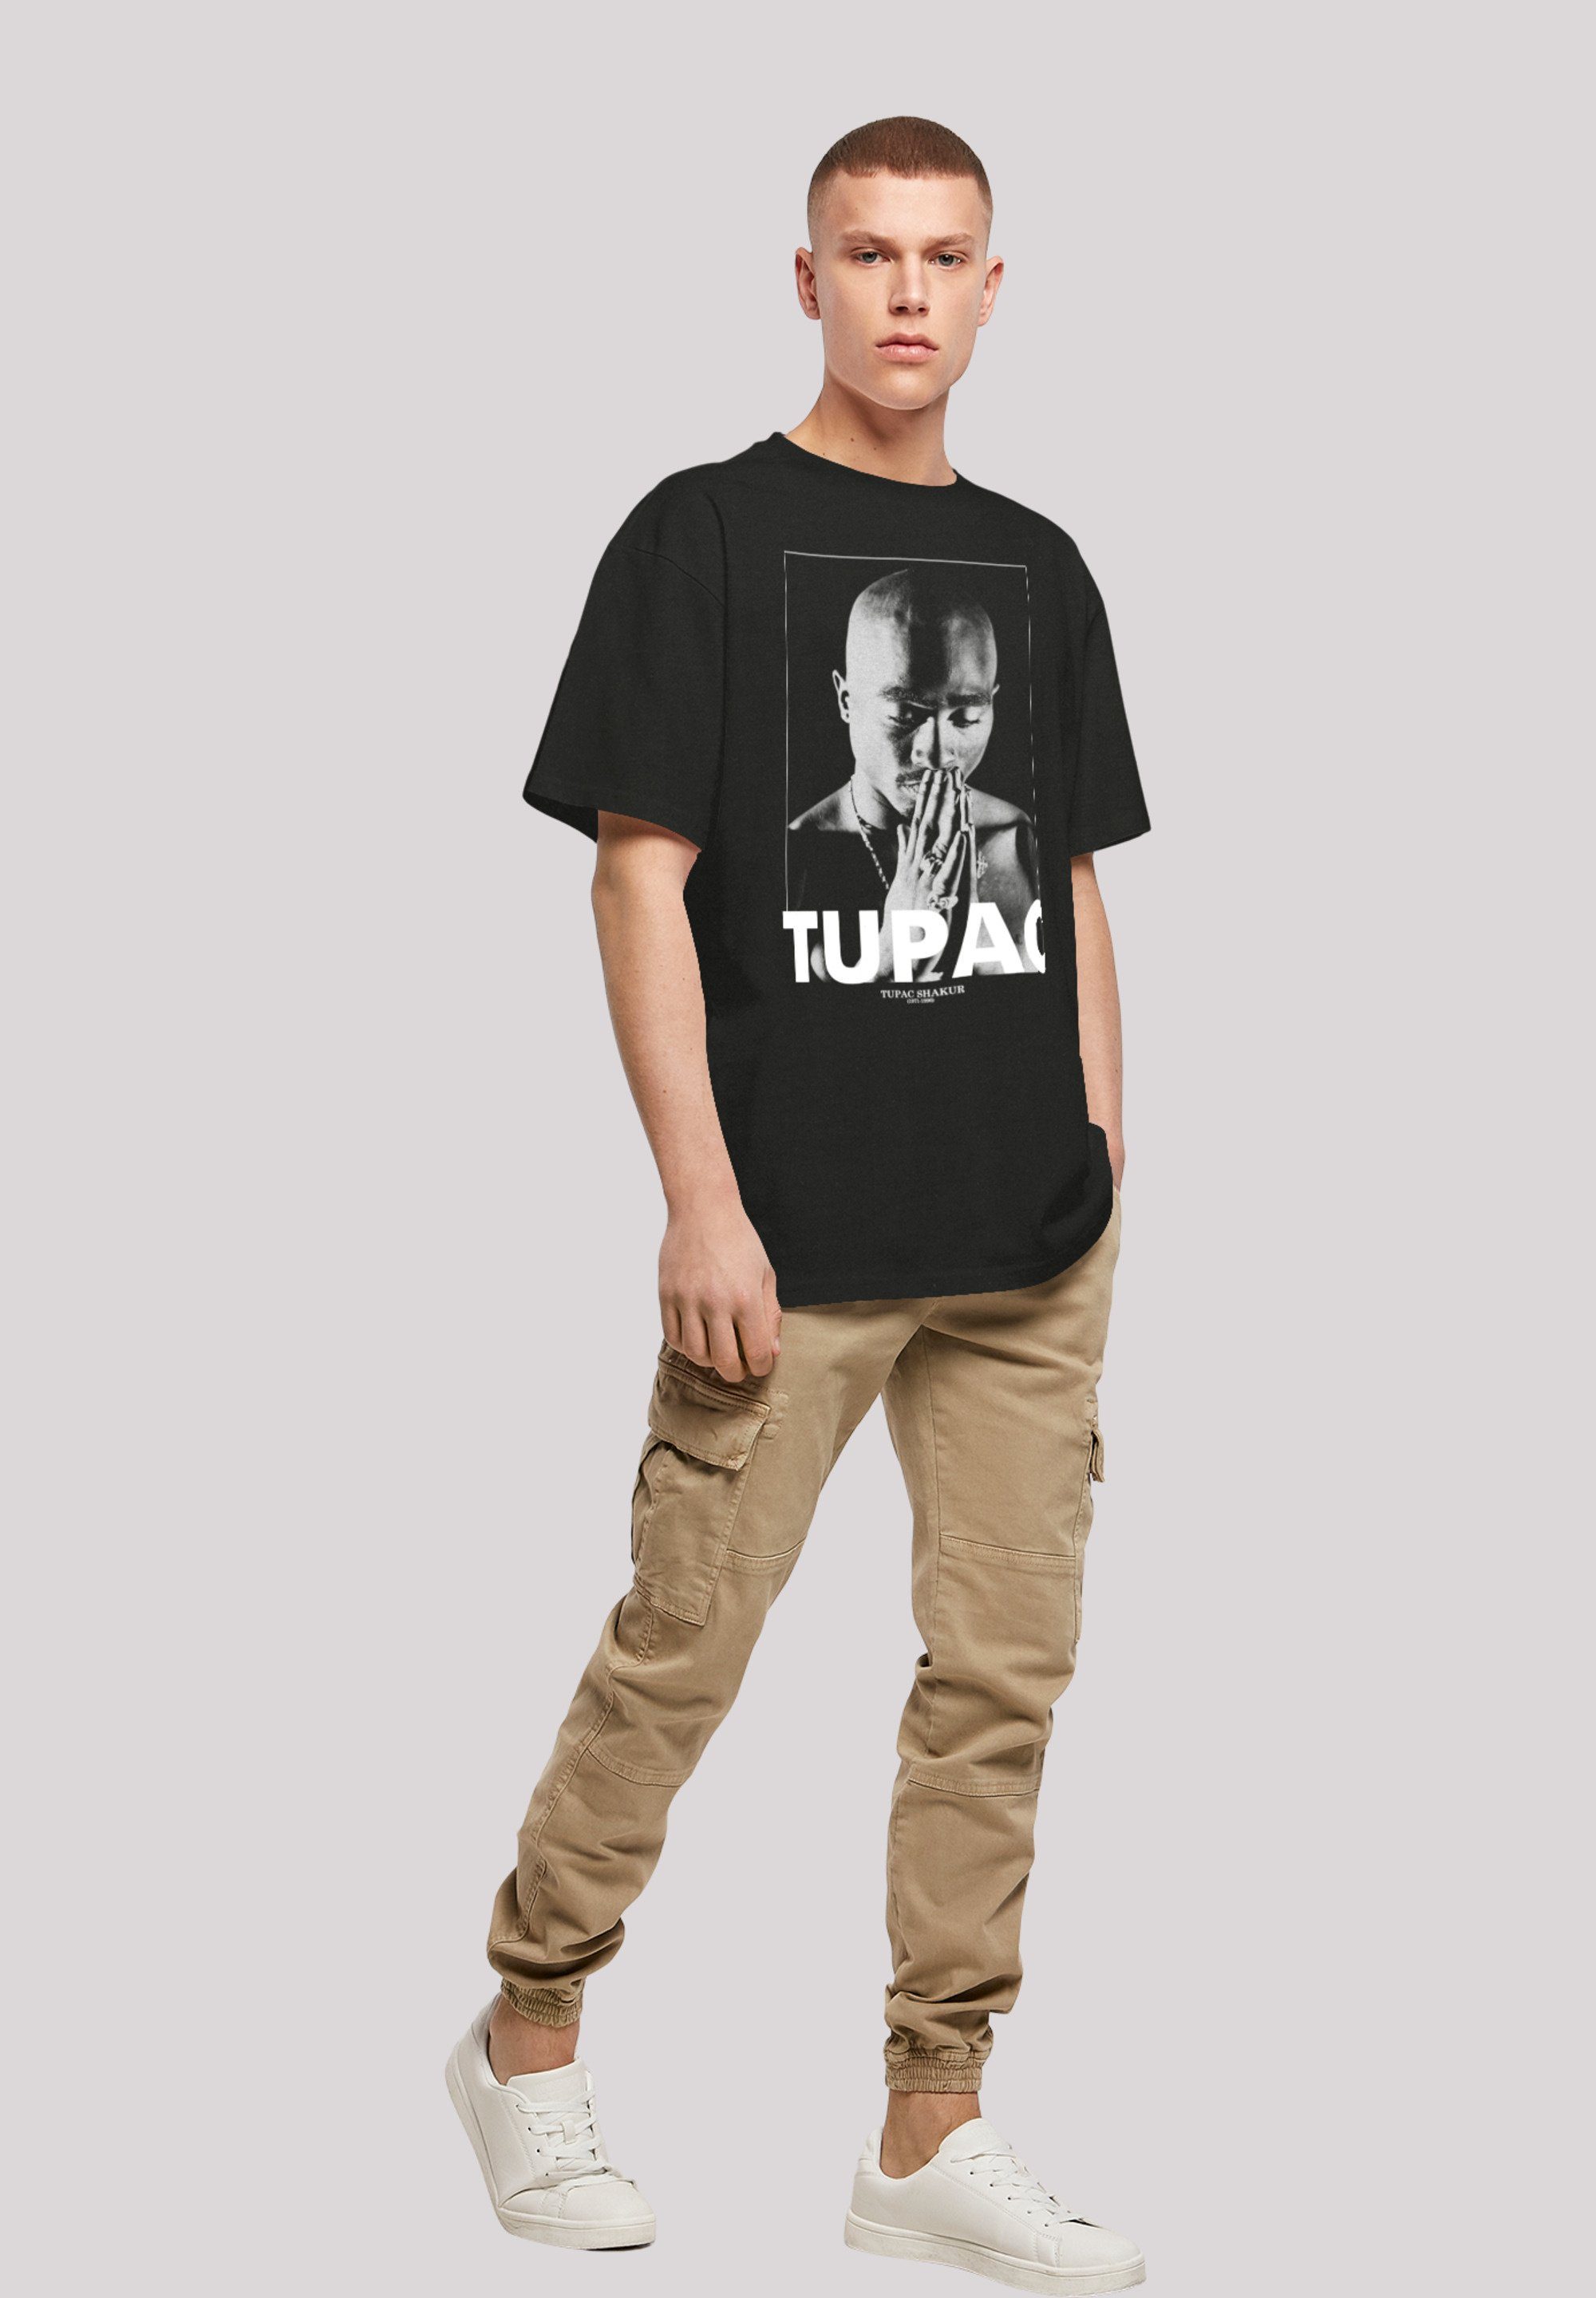 T-Shirt Tupac Shakur Print F4NT4STIC Praying